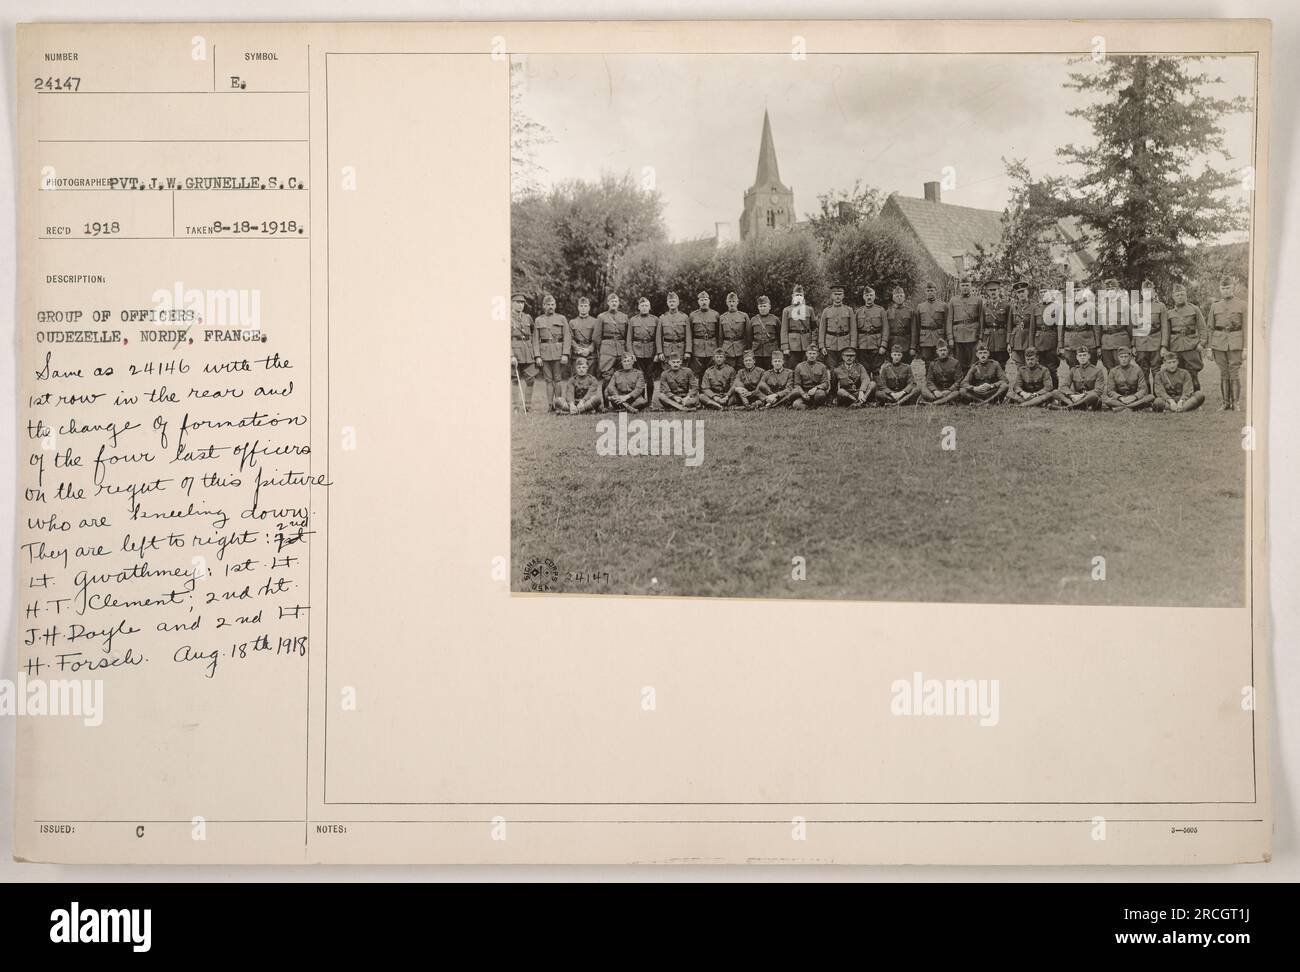 Un gruppo di ufficiali a Oudezelle, nel Norde, in Francia, in posa per una foto. Gli ufficiali sono visti in formazione, con un cambiamento nella disposizione degli ultimi quattro ufficiali sulla destra, che si stanno inginocchiando. Da sinistra a destra, vengono identificati come QT. Gwathmey, primo tenente L H.T. Clement, 2° tenente J.H. Poyle, e il secondo tenente H. Forsch. La foto è stata scattata il 18 agosto 1918. (Nota: Il numero di riferimento dell'immagine è 111-SC-24147 e il fotografo è J.W. Grunelle) Foto Stock